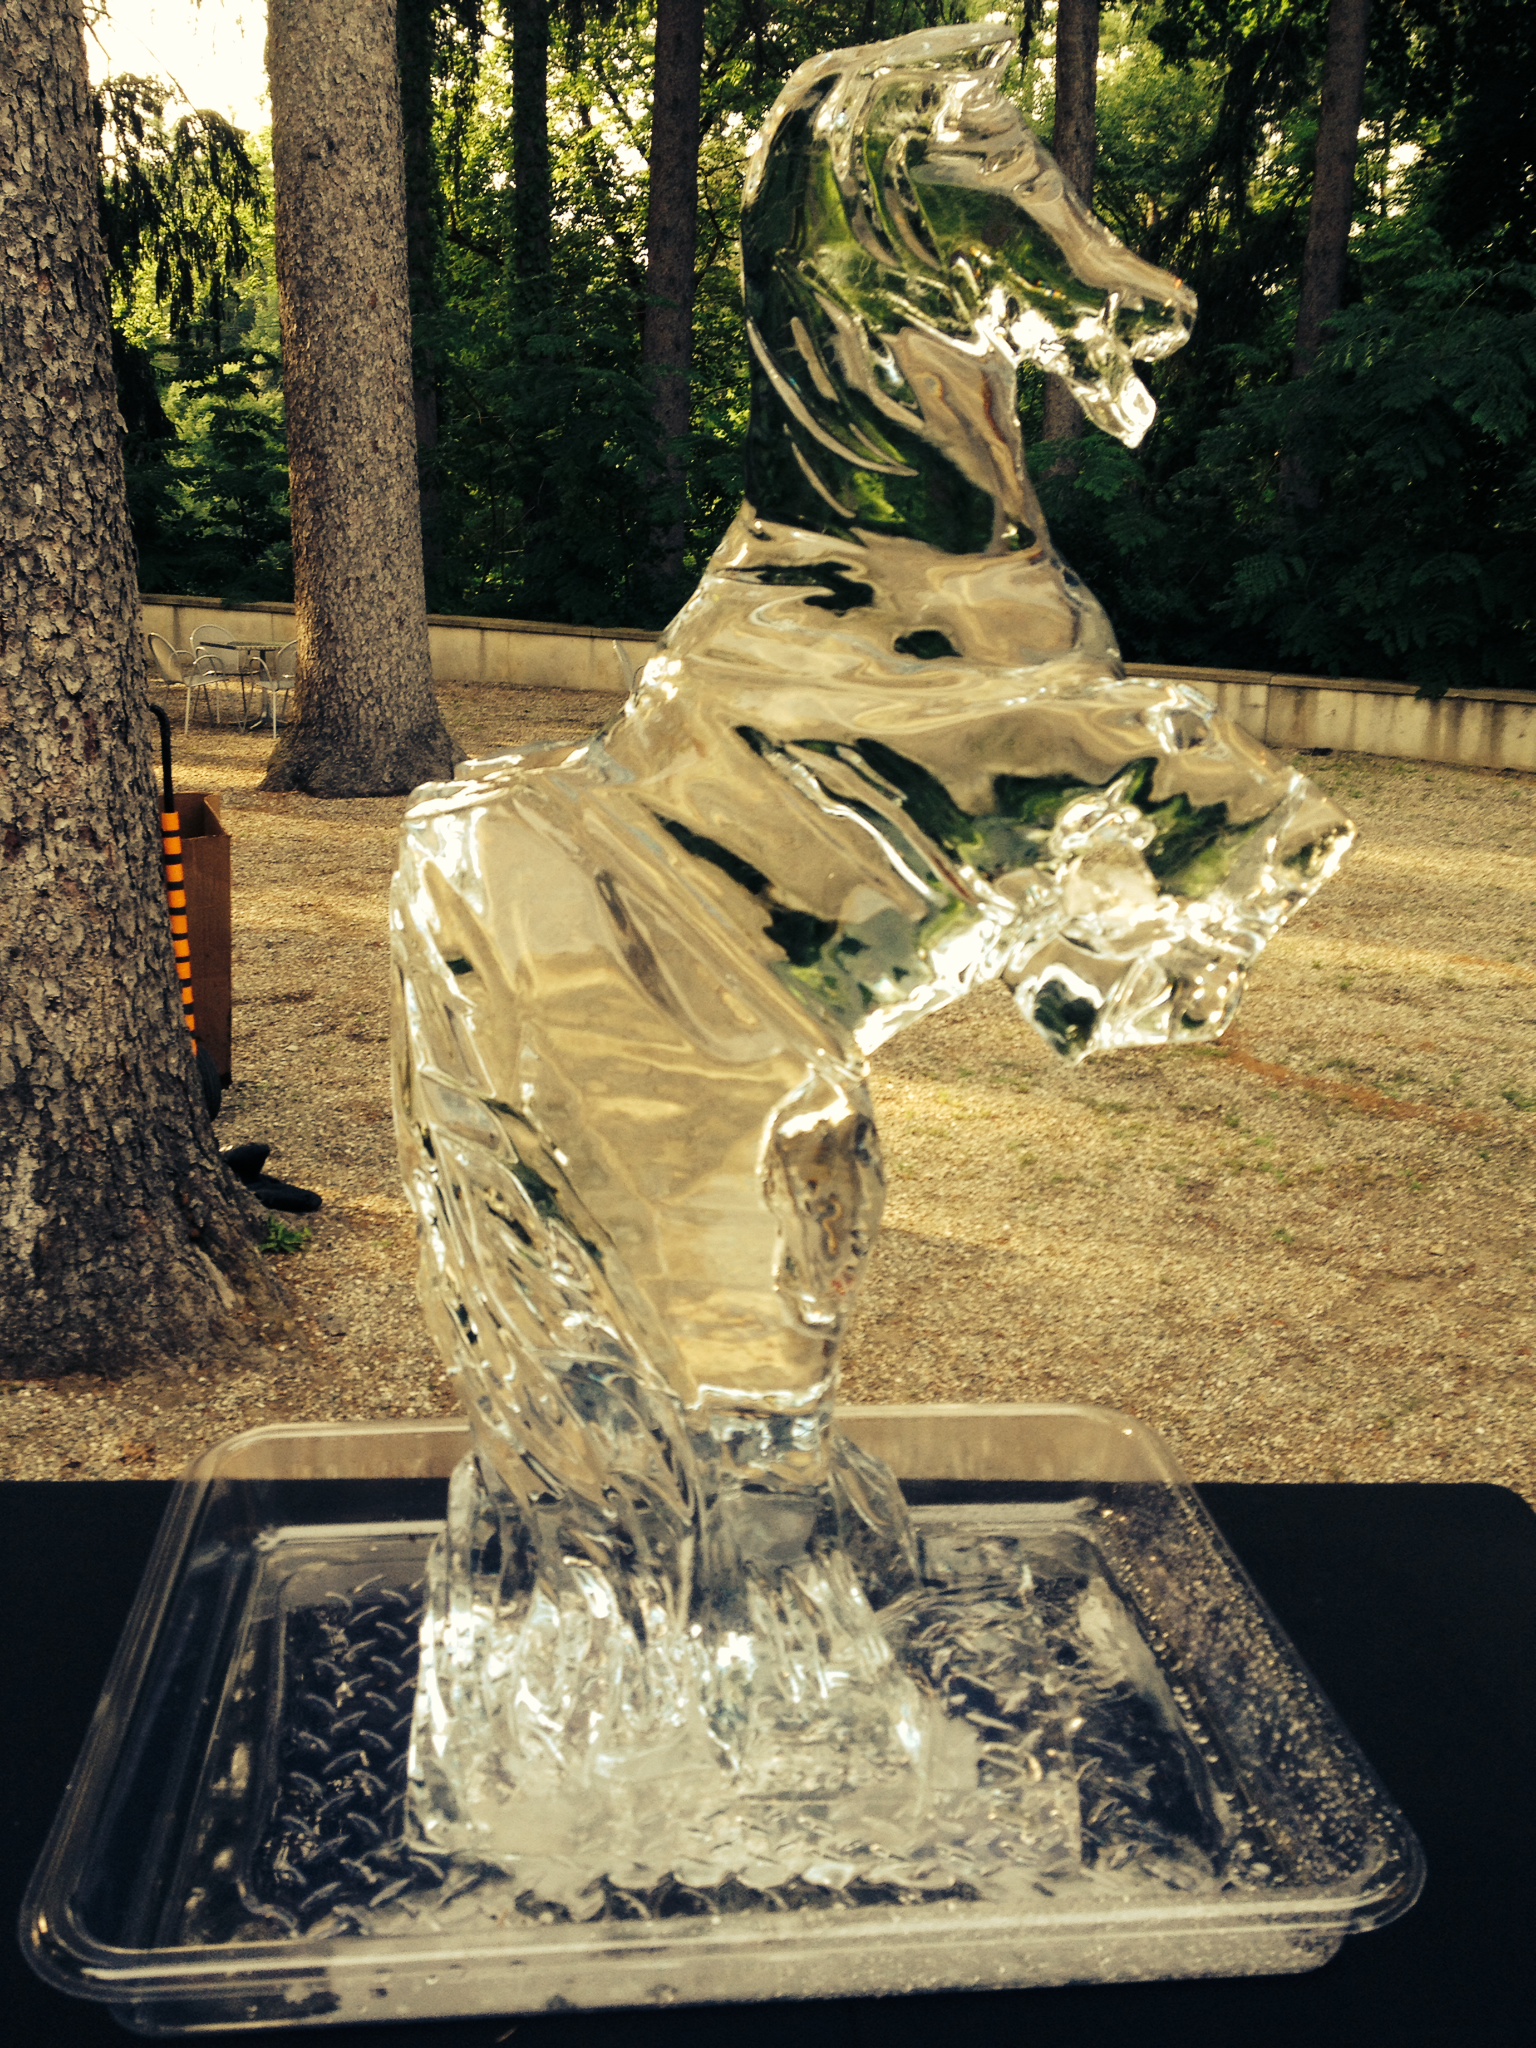 katonah-museum-of-art-ice-horse.jpg